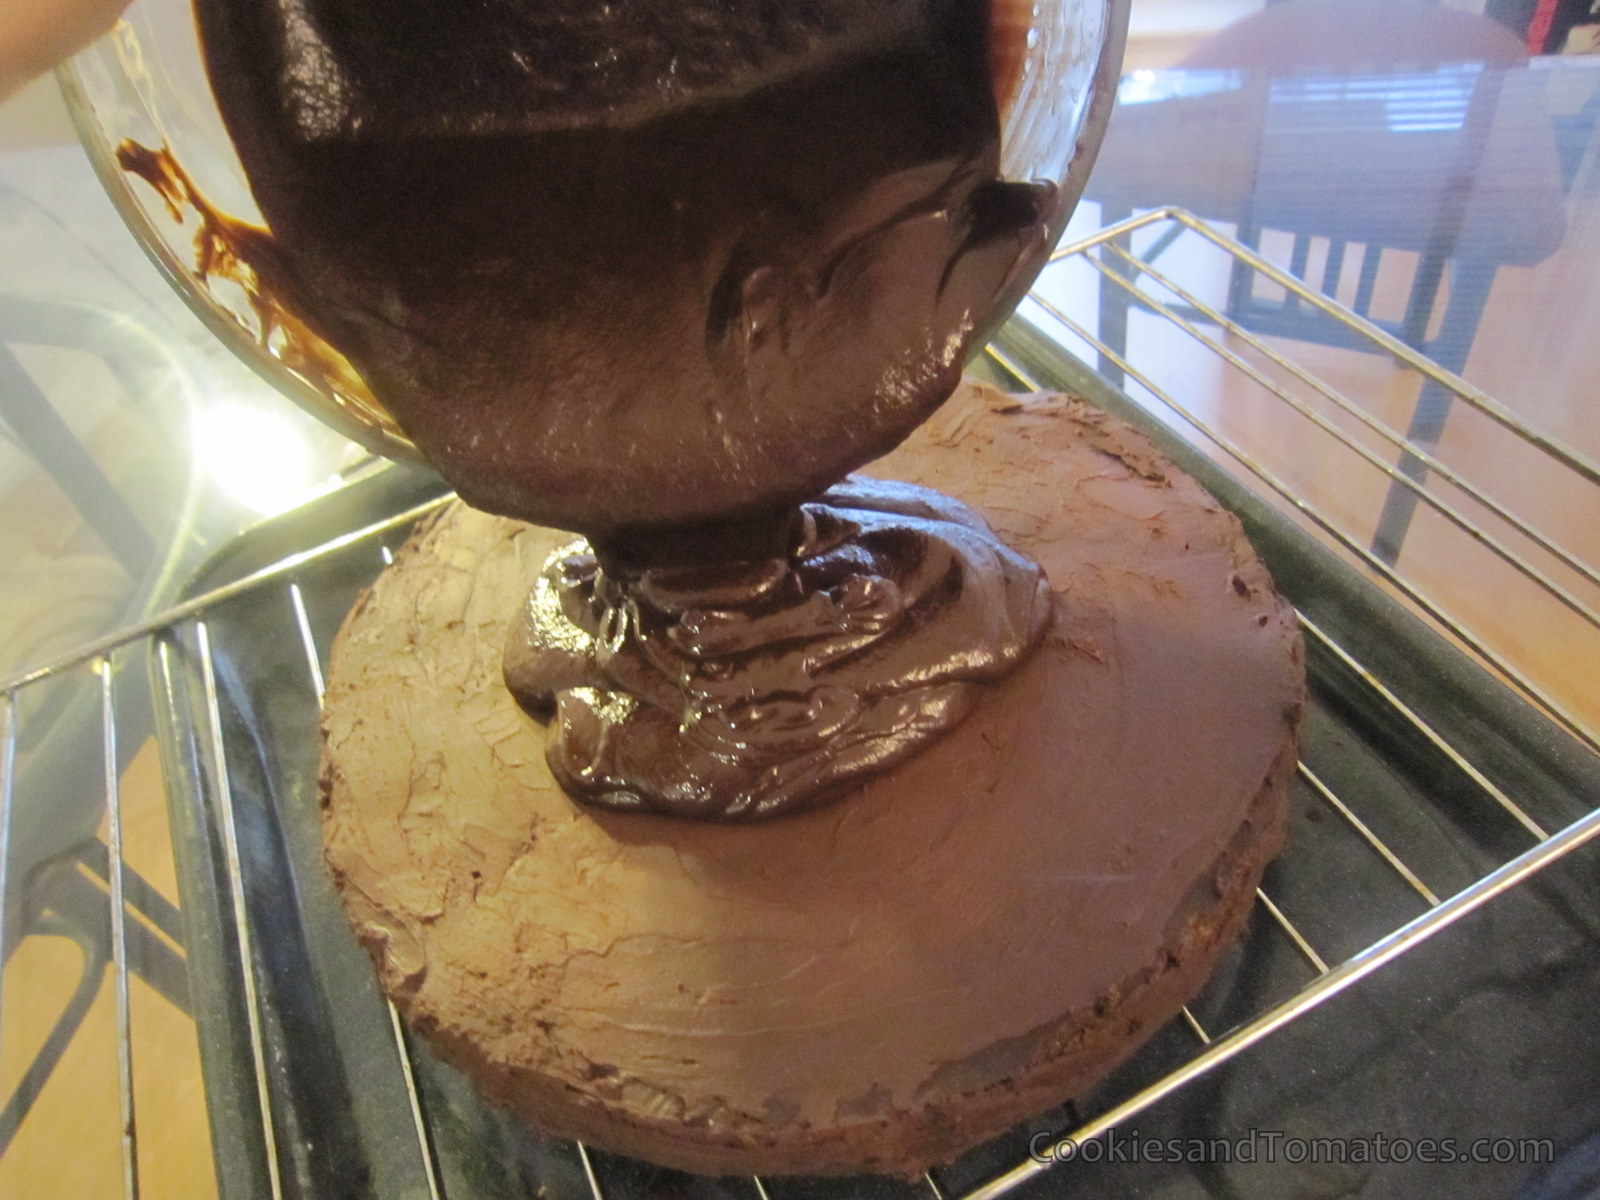 http://2.bp.blogspot.com/_3gA3wtg4v6w/TN2yIy0WadI/AAAAAAAAHrg/-dv07b6ZMFs/s1600/Chili+Chocolate+Cake-36.JPG